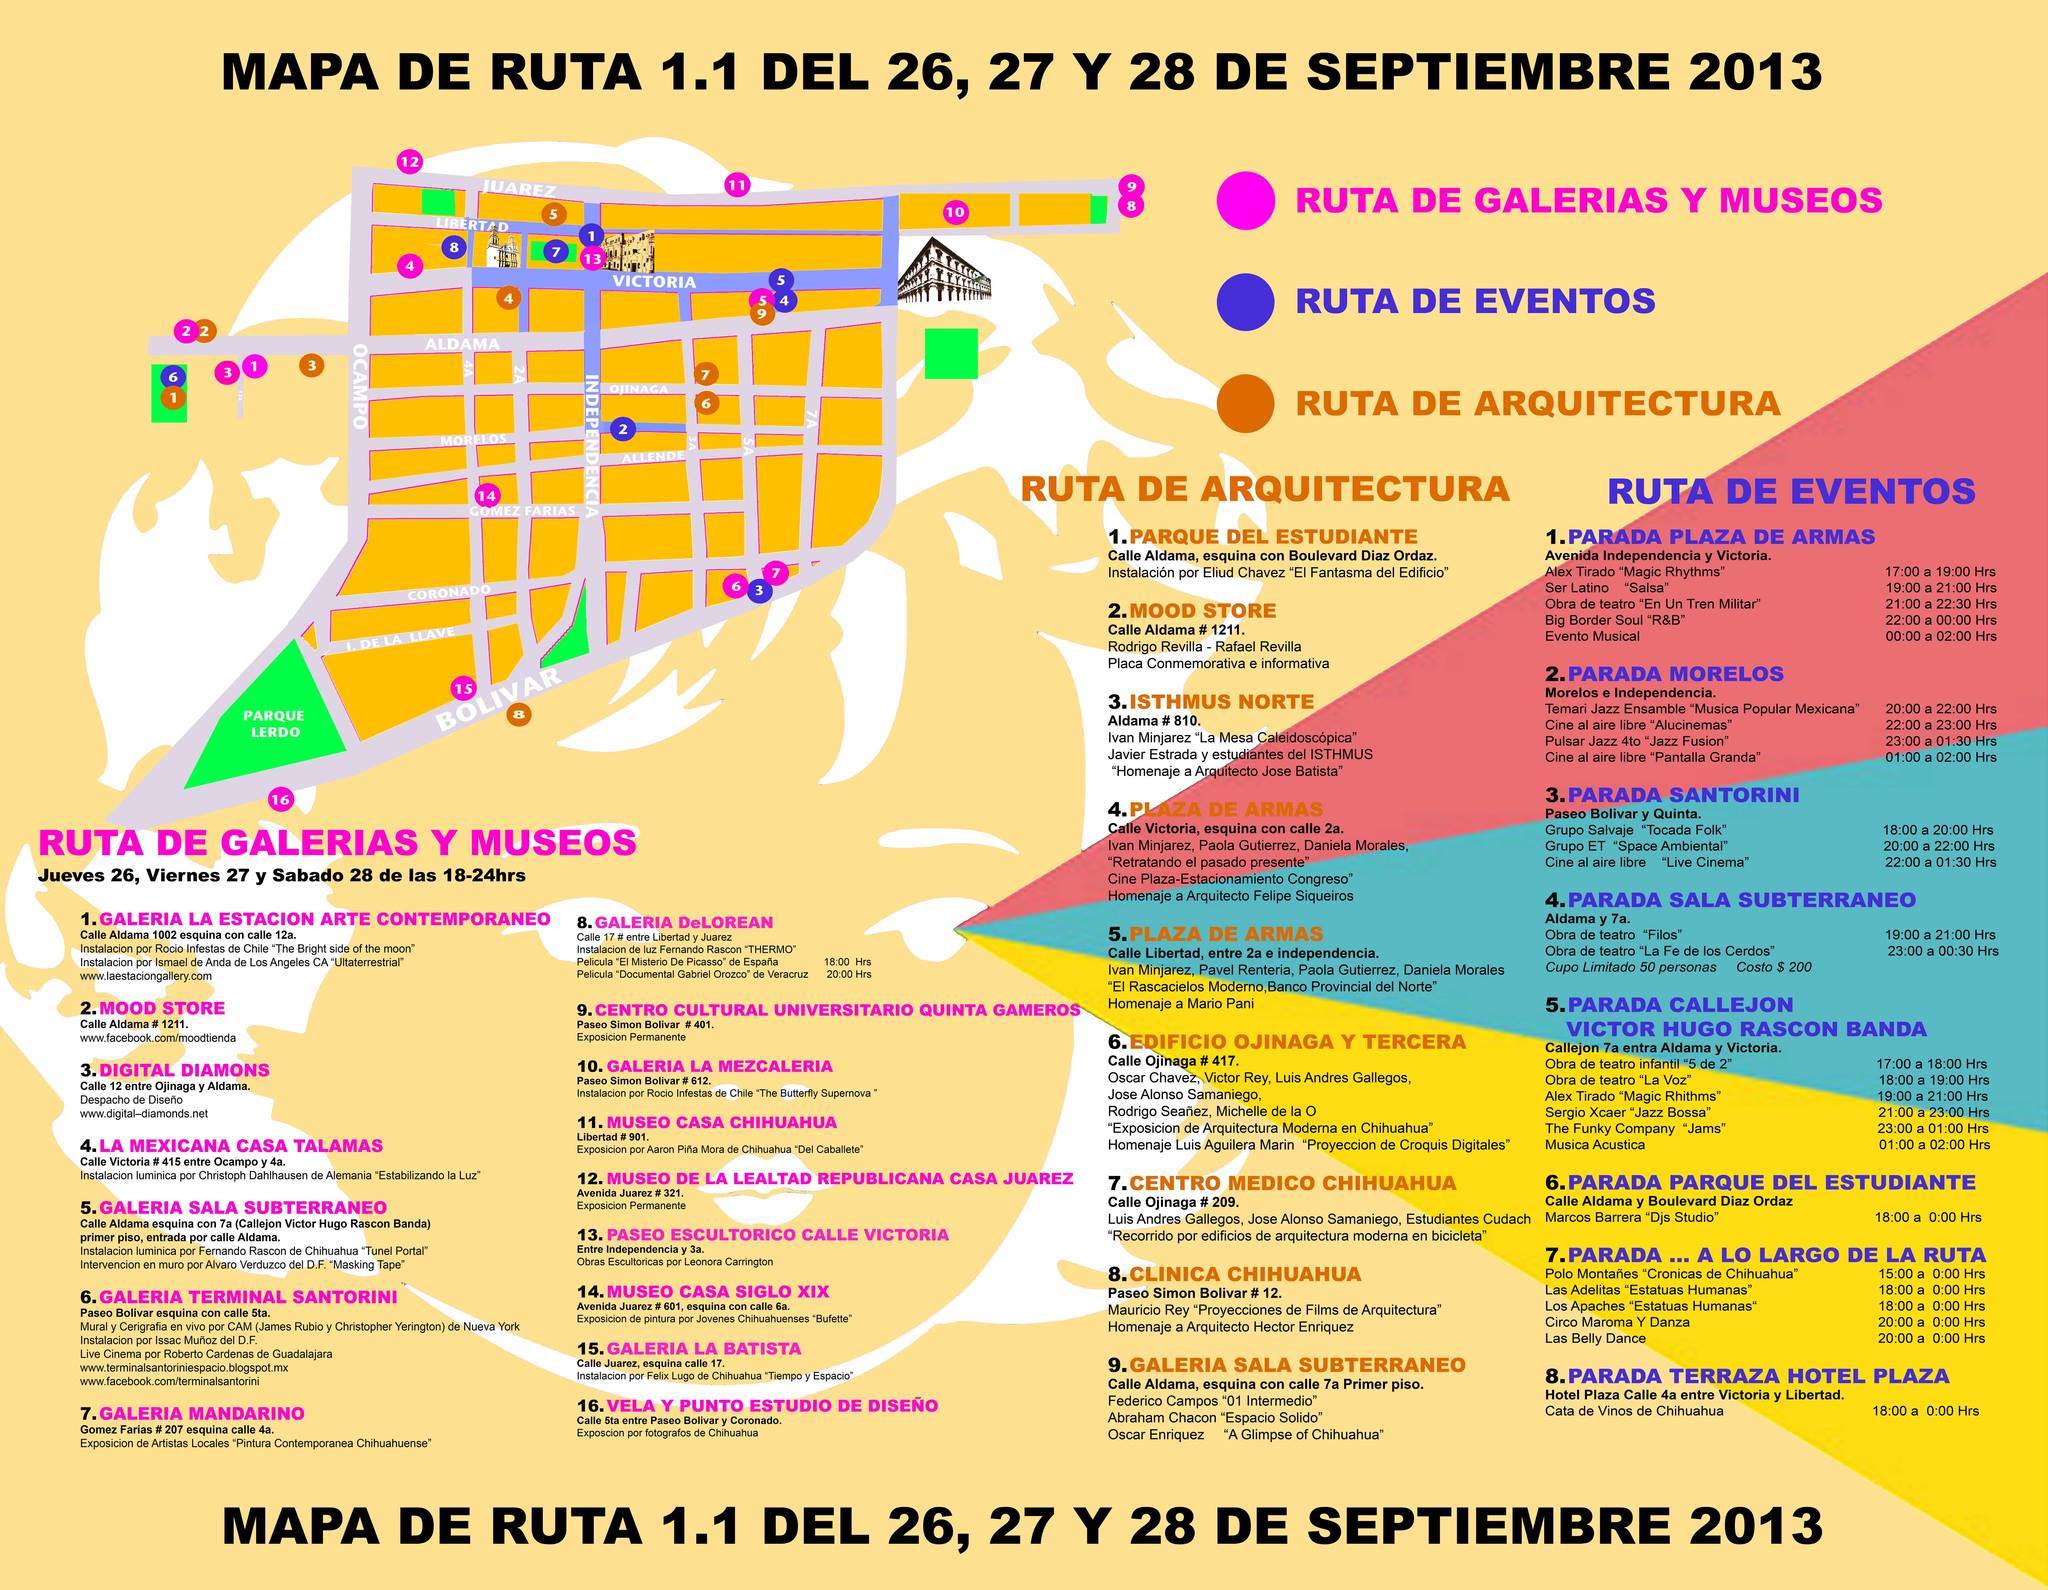 Mapa y calendario de eventos de La Ruta 1.1